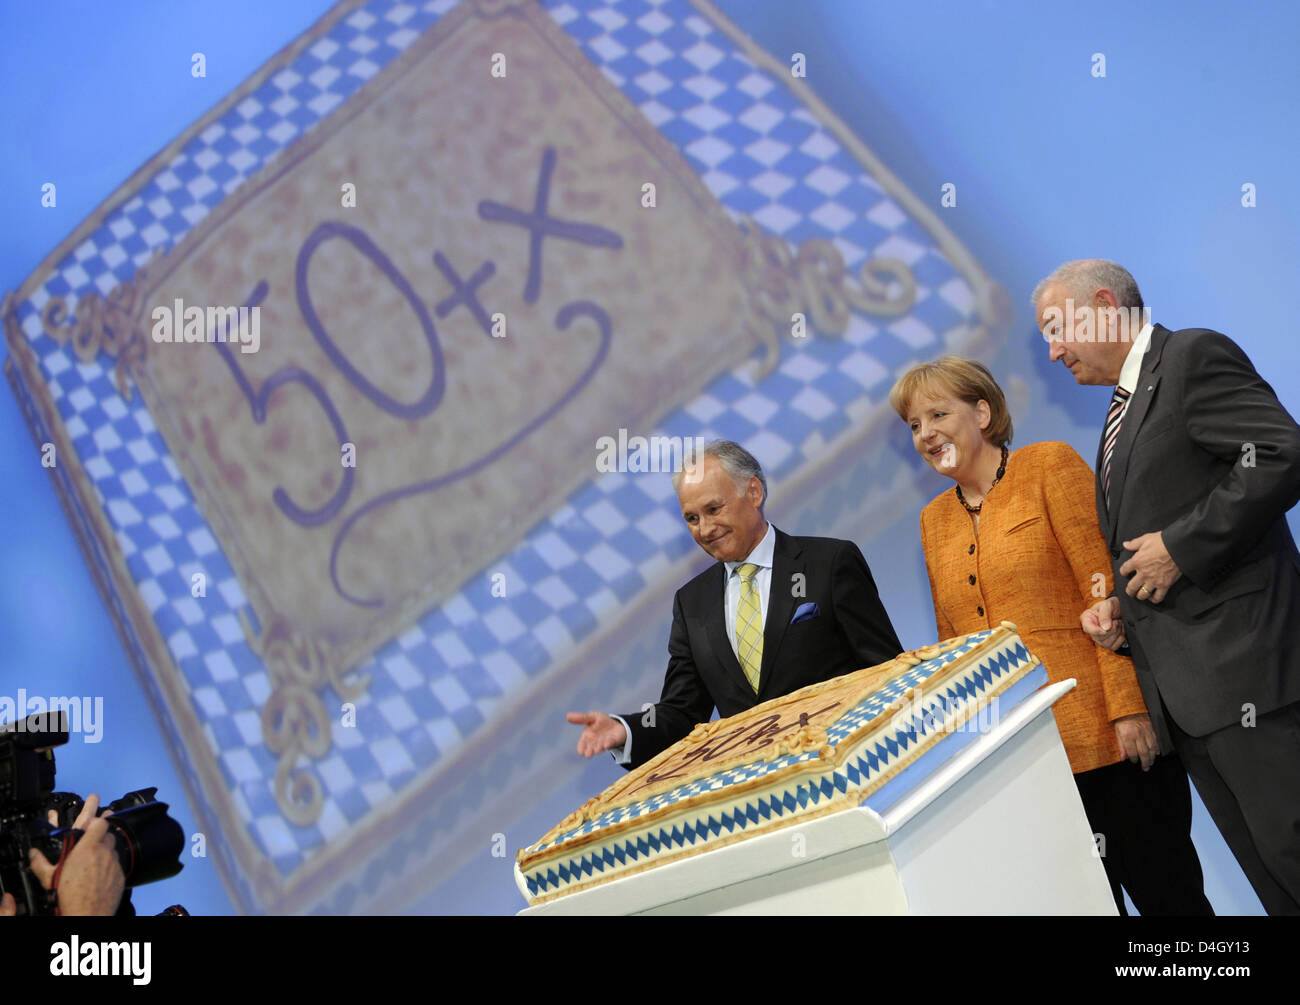 German chancellor Angela Merkel (C) wird mit einer Torte anlässlich des 54. Geburtstag neben Bavarian Prime Minister Guenther Beckstein (R) und CSU-Vorsitzende Erwin Huber (L) auf dem CSU-Parteitag in Nürnberg, 18. Juli 2008 vorgestellt. Der Kongress wird bis 19. Juli 2008 stattfinden. Foto: Peter Kneffel Stockfoto